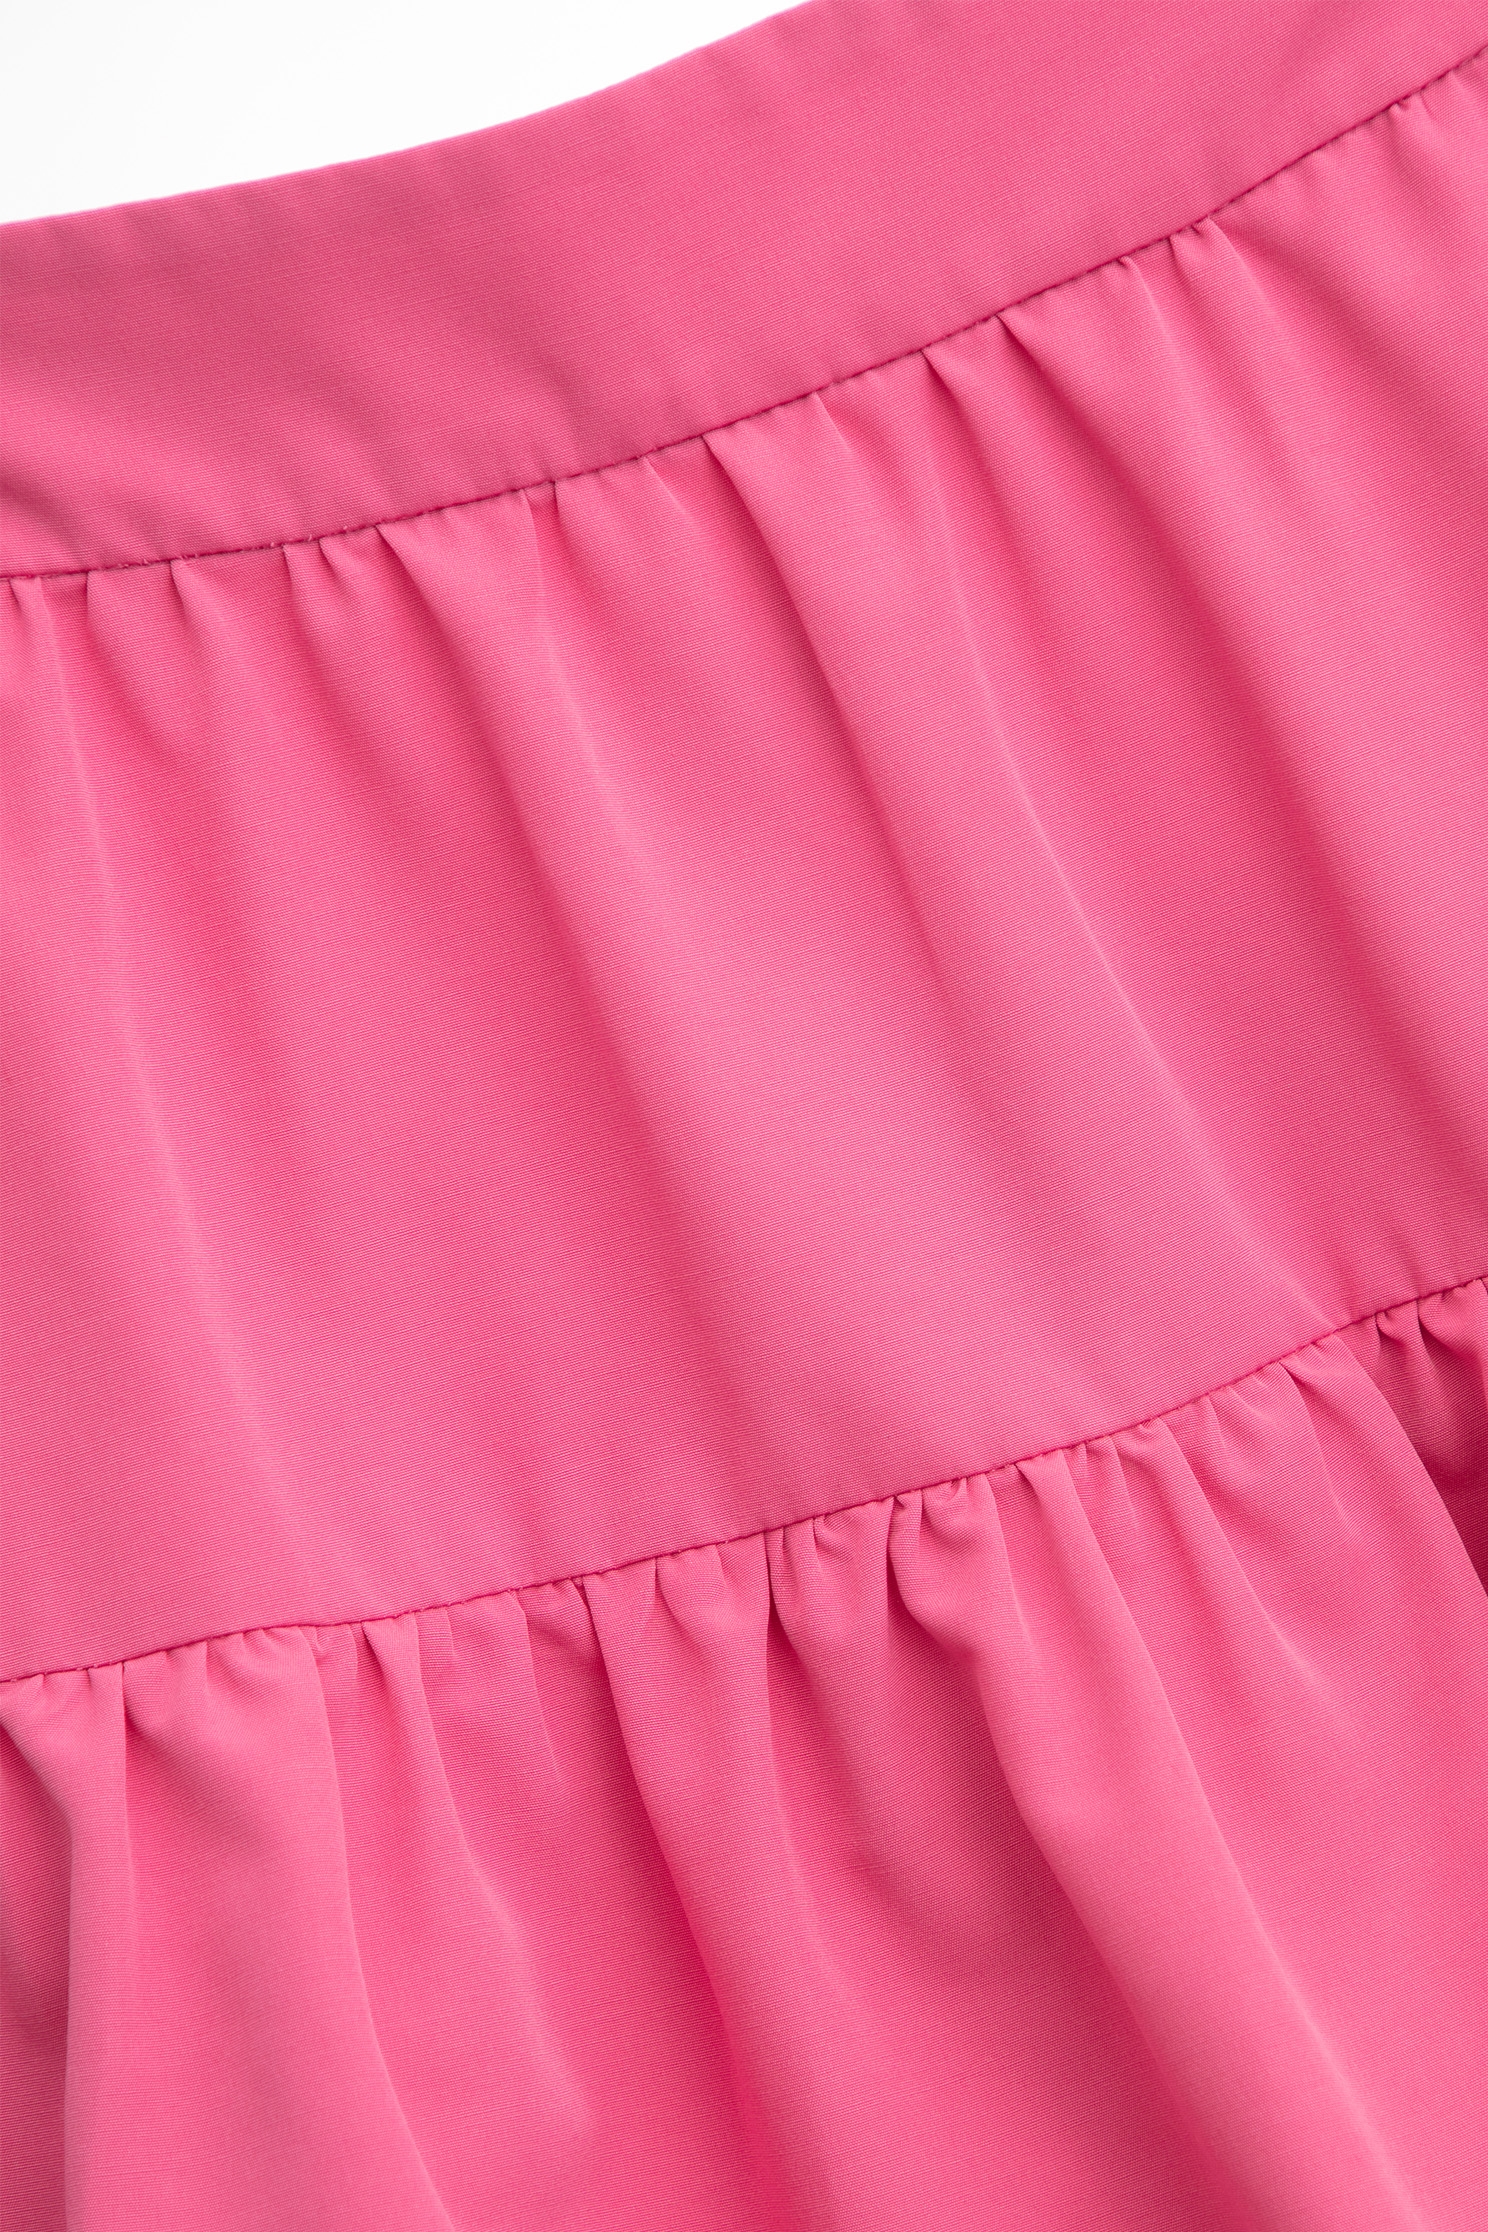 閃粉色鬆糕長裙閃粉色鬆糕長裙,春夏穿搭,時髦選品專區,網裙,長裙